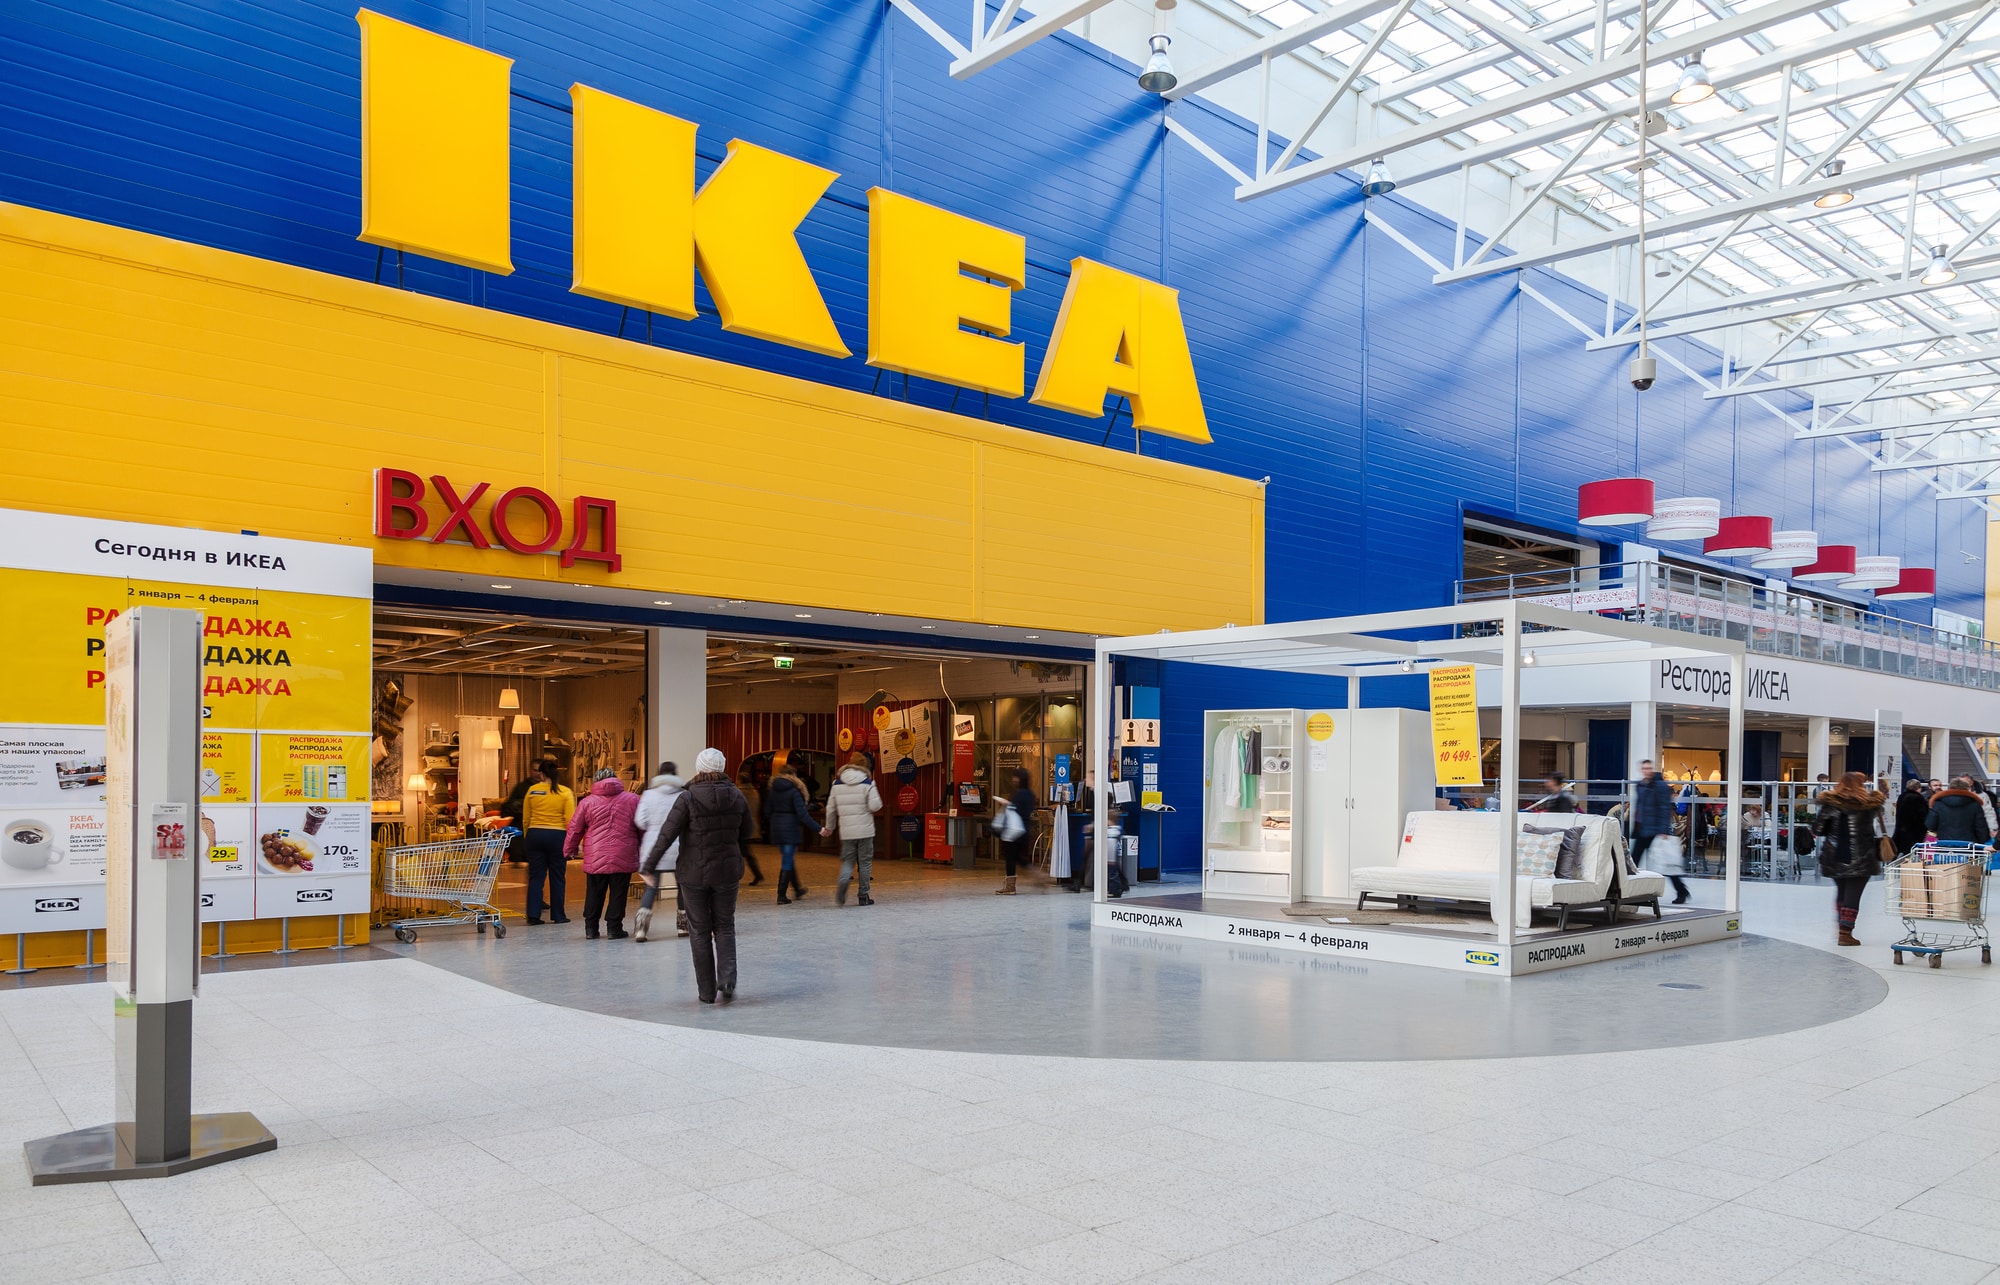 Découvrez la maison IKEA à 25 000€ qui vous fera rêver avec ses 25m² de confort absolu !